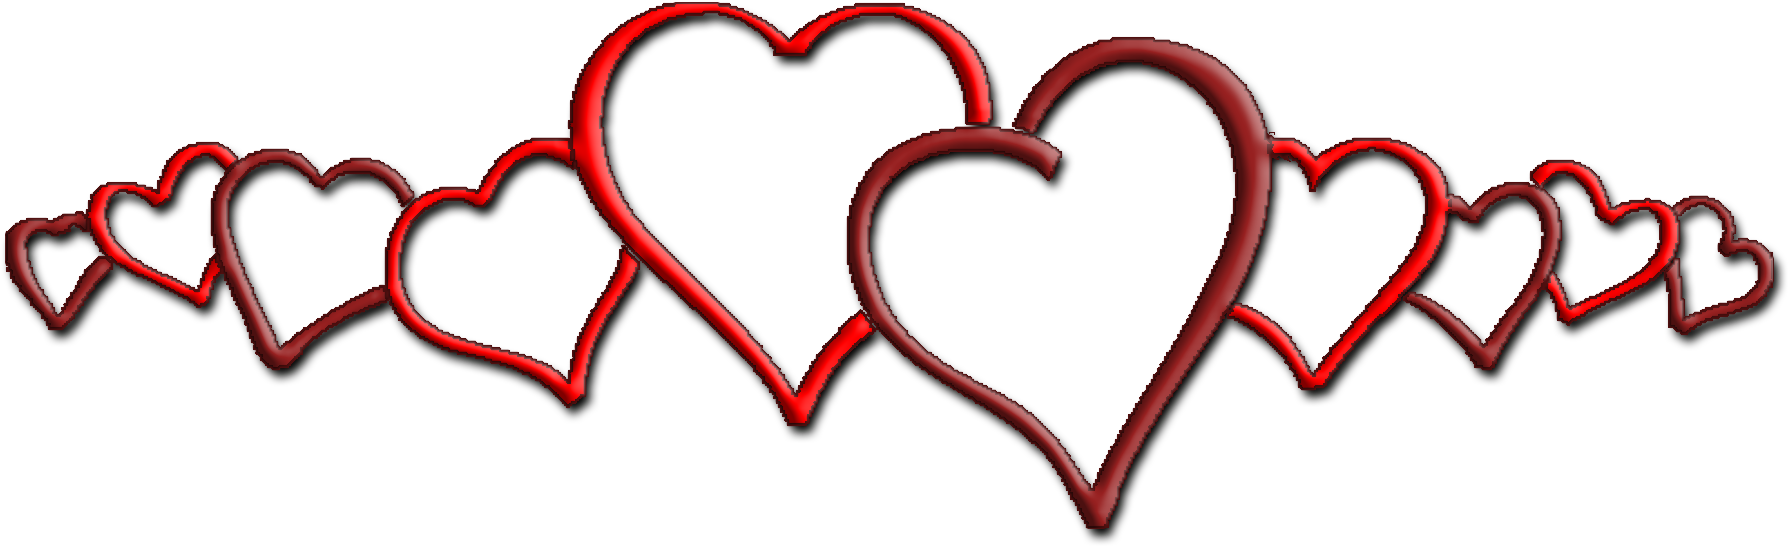 Row Of Hearts - Heart Border (2000x629)